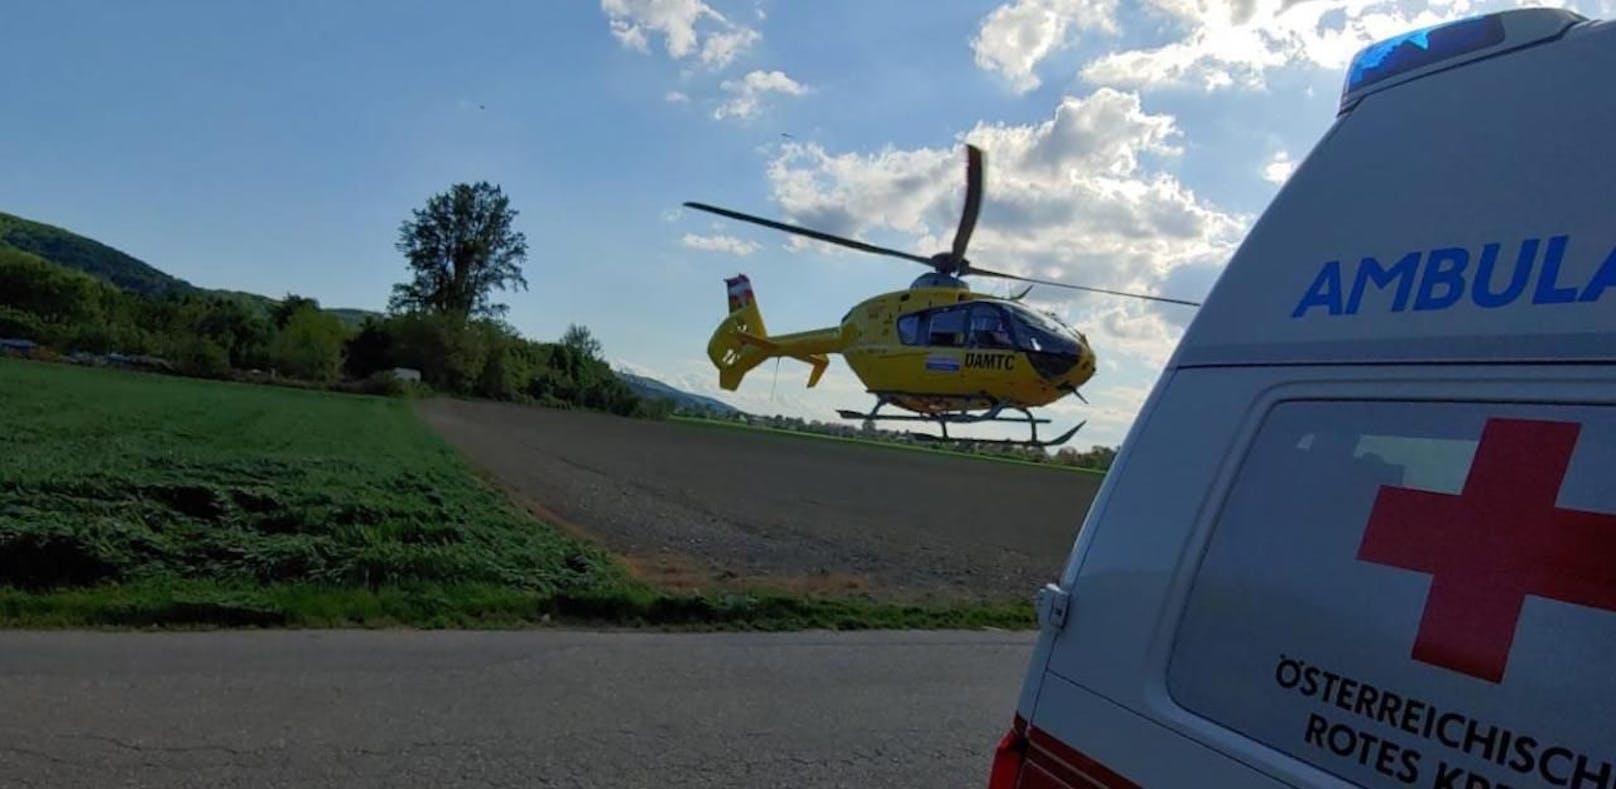 Das Mädchen wurde mit dem Notarzthubschrauber ins Spital geflogen.